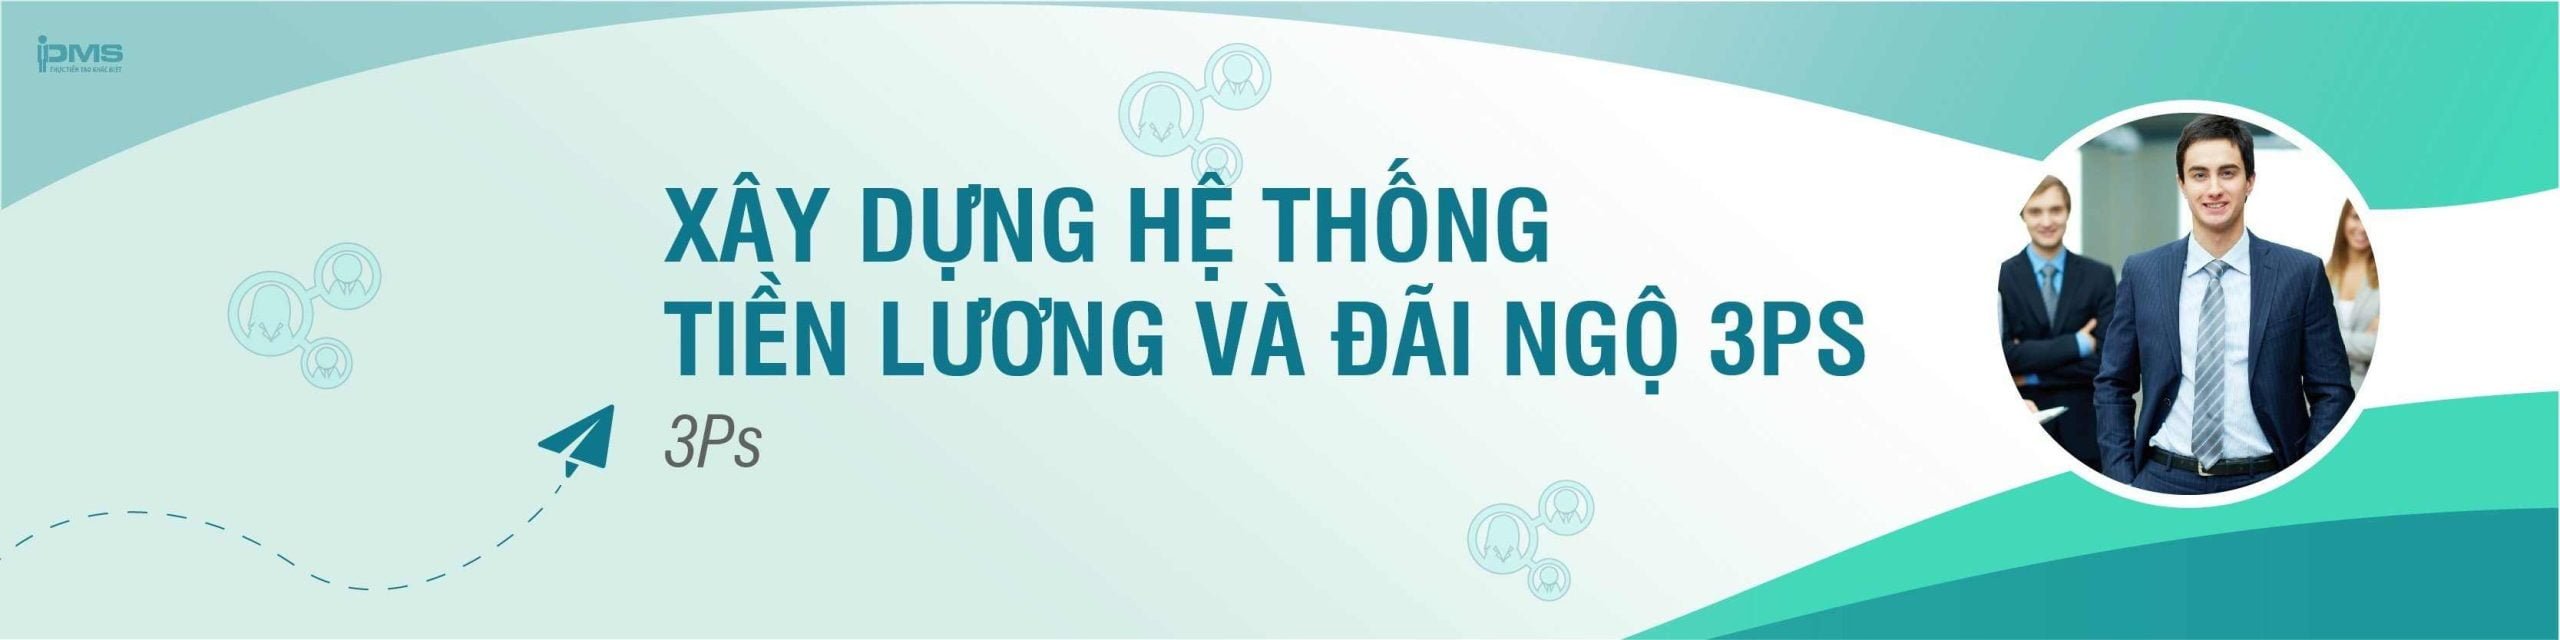 khoa-hoc-xay-dung-he-thong-tien-luong-va-dai-ngo-3ps.jpg